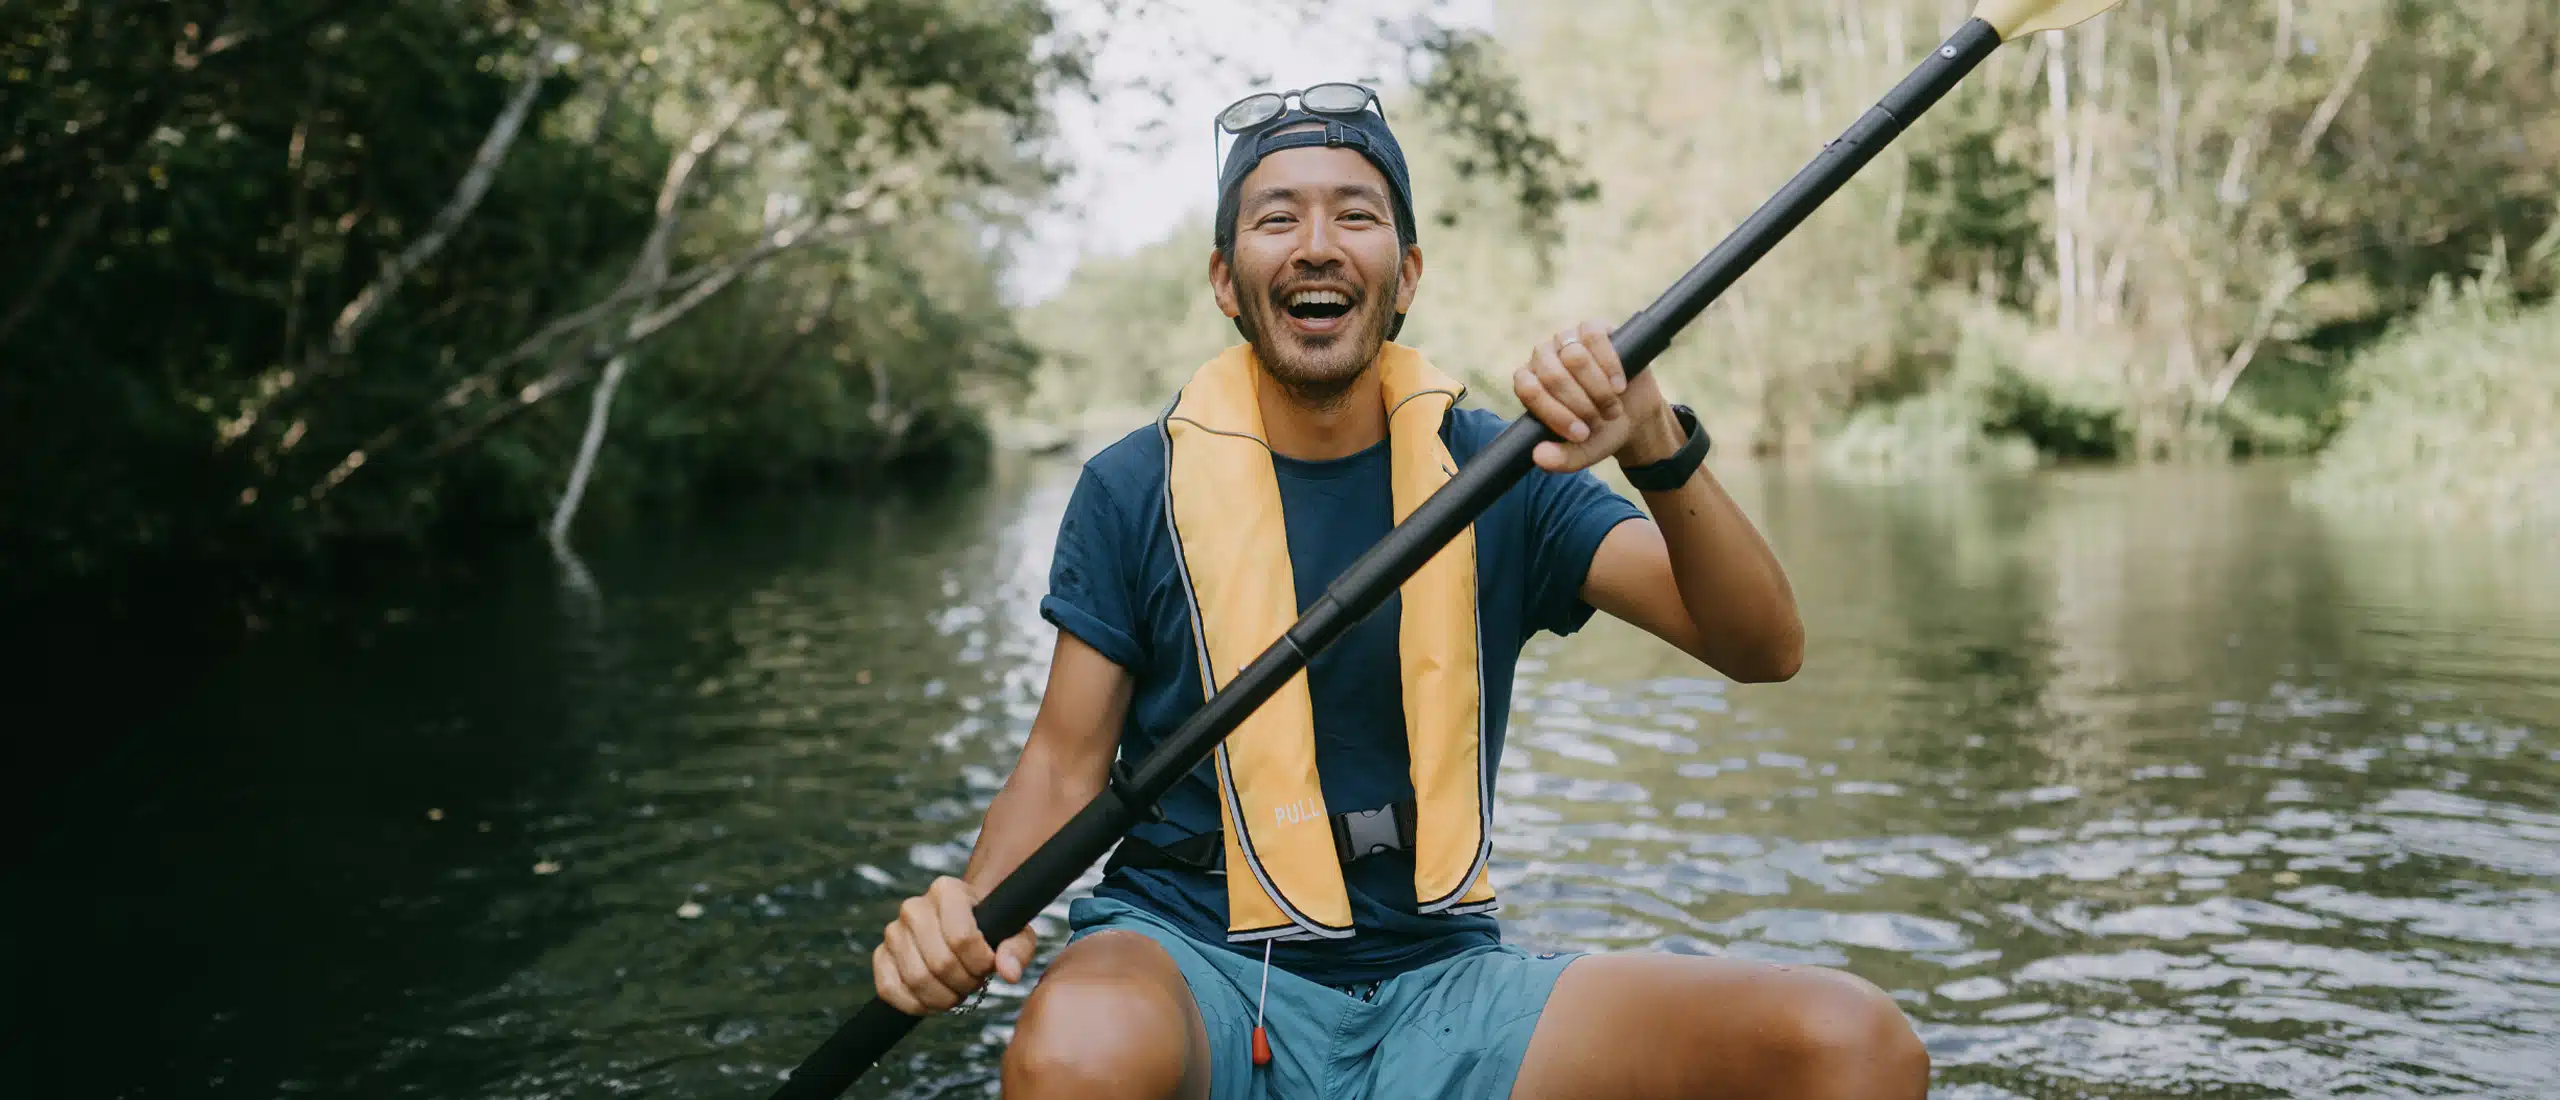 Man smiles while paddling a kayak